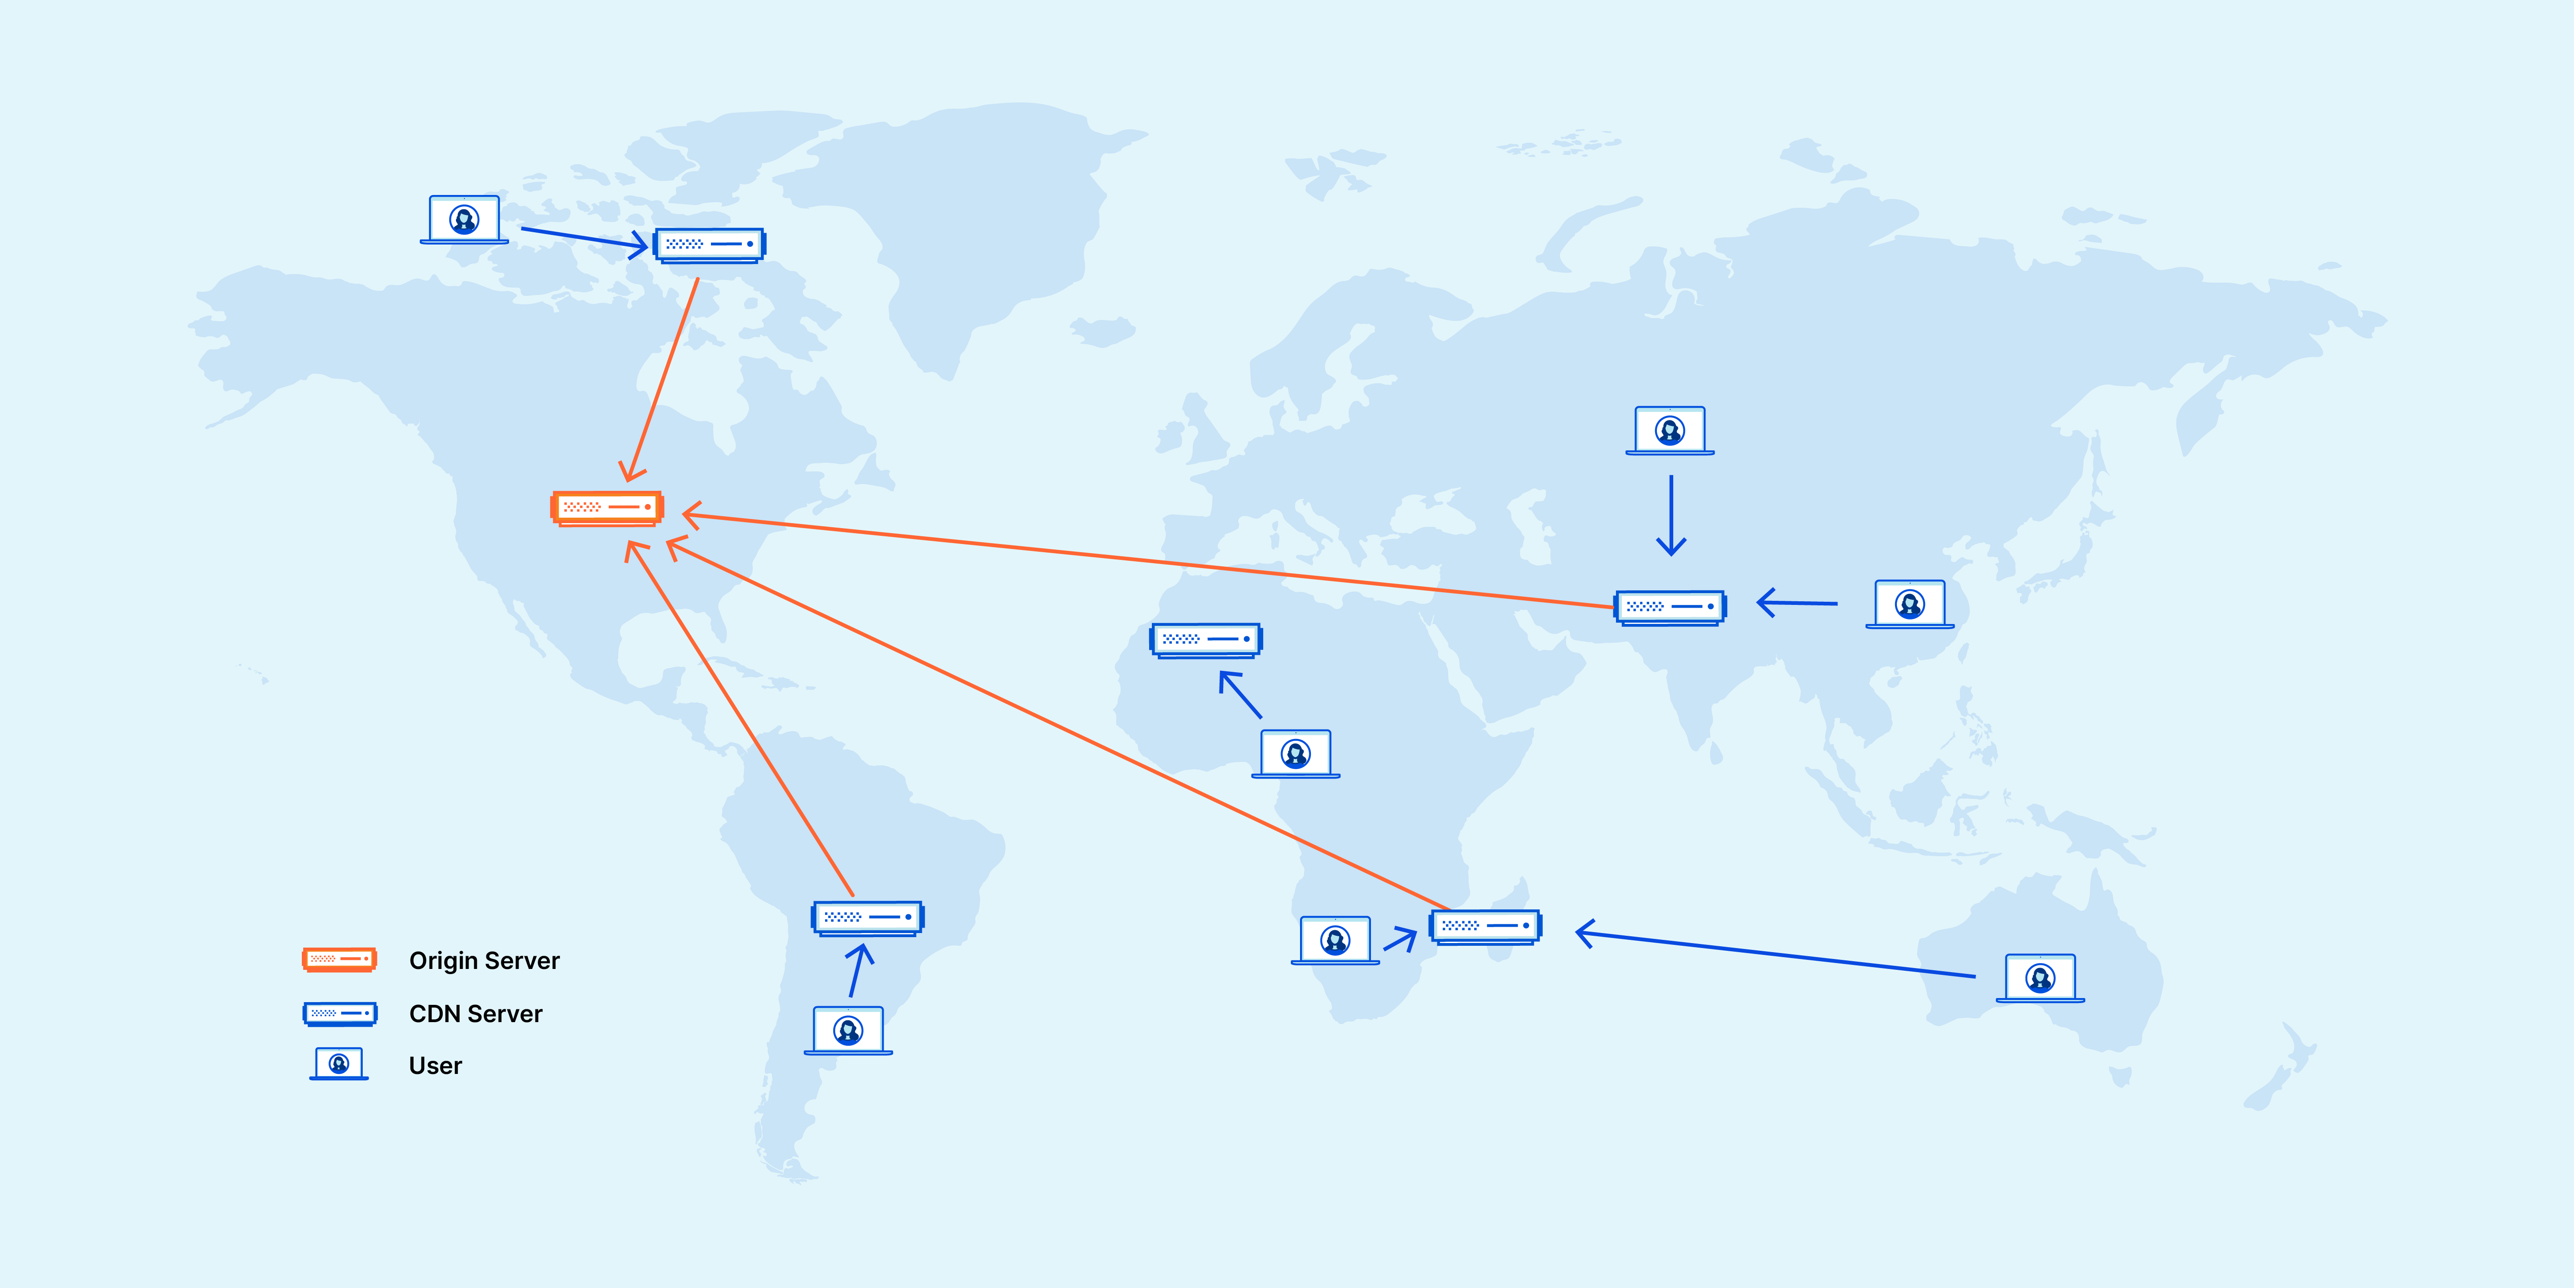 콘텐츠를 제공하는 전 세계적으로 분산된 서버의 지도 - CDN이란